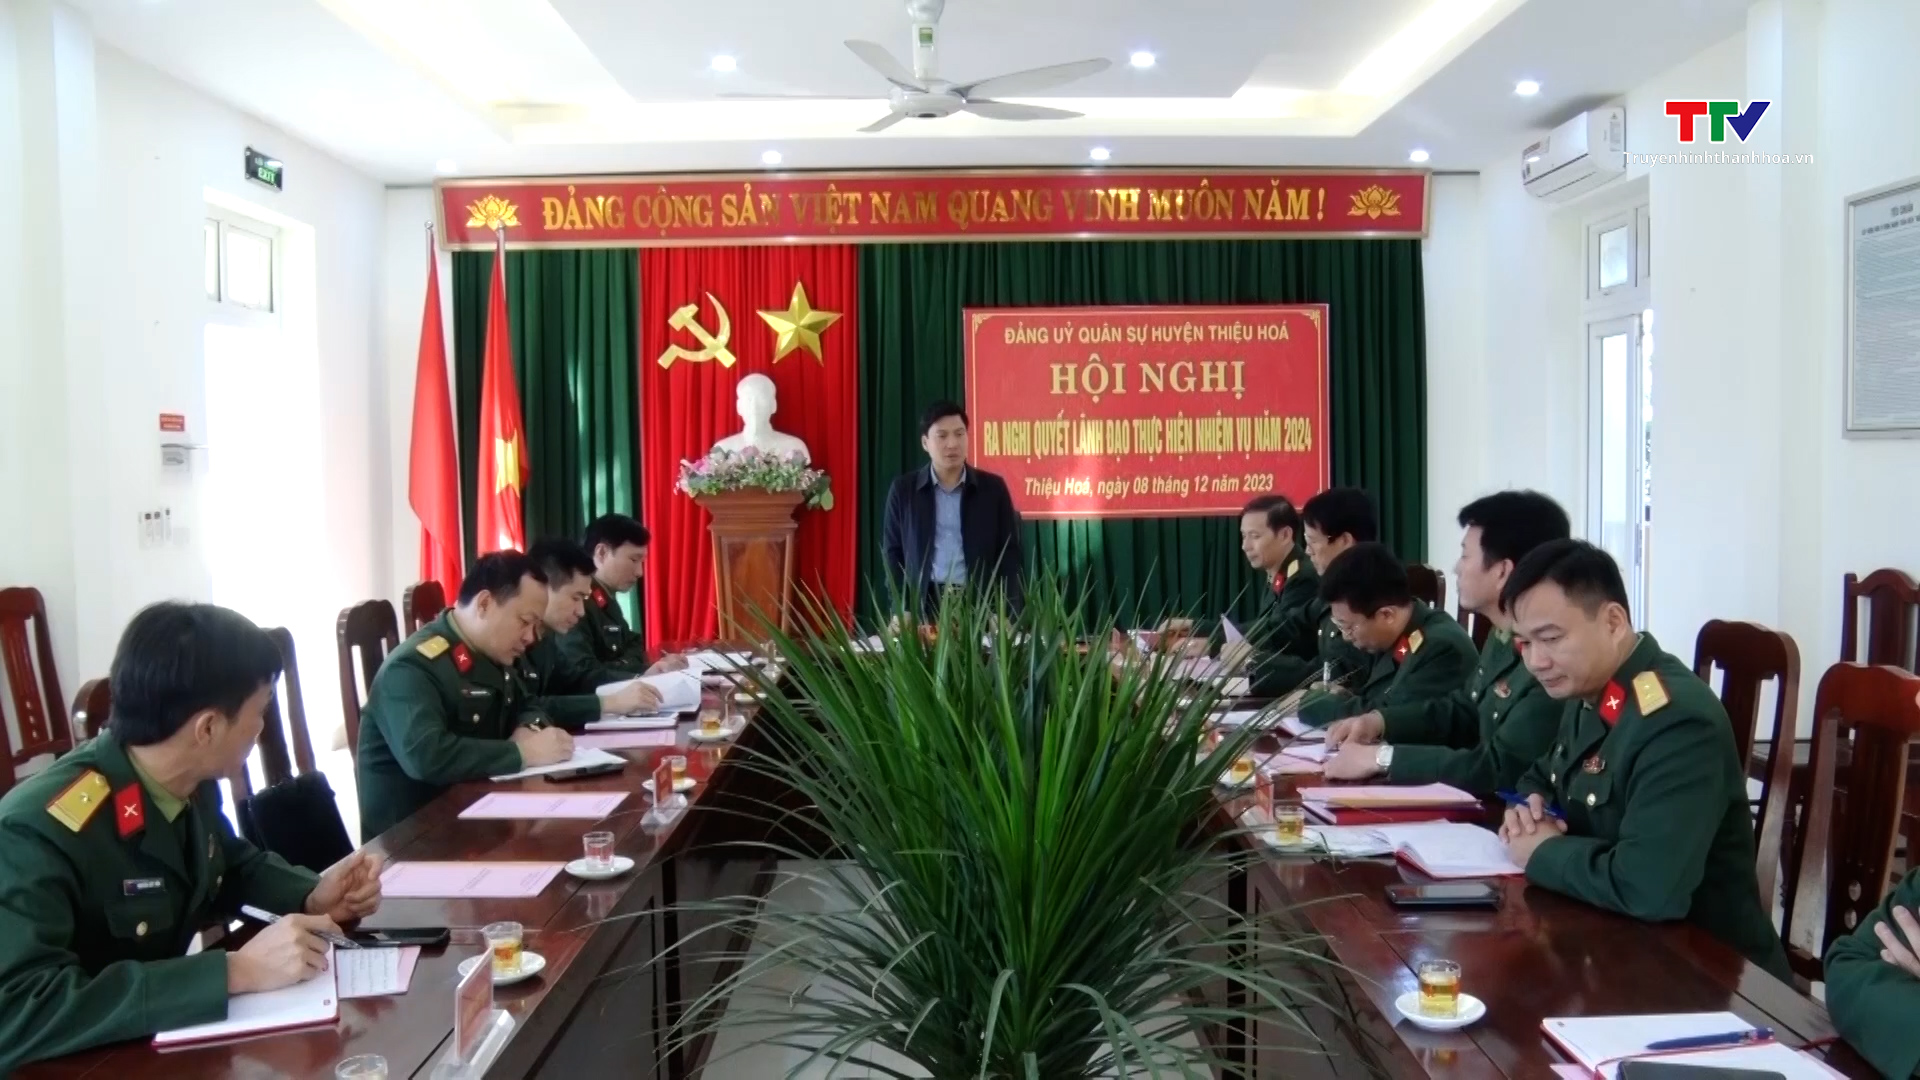 Đảng uỷ Quân sự huyện Thiệu Hoá triển khai nhiệm vụ năm 2024- Ảnh 1.